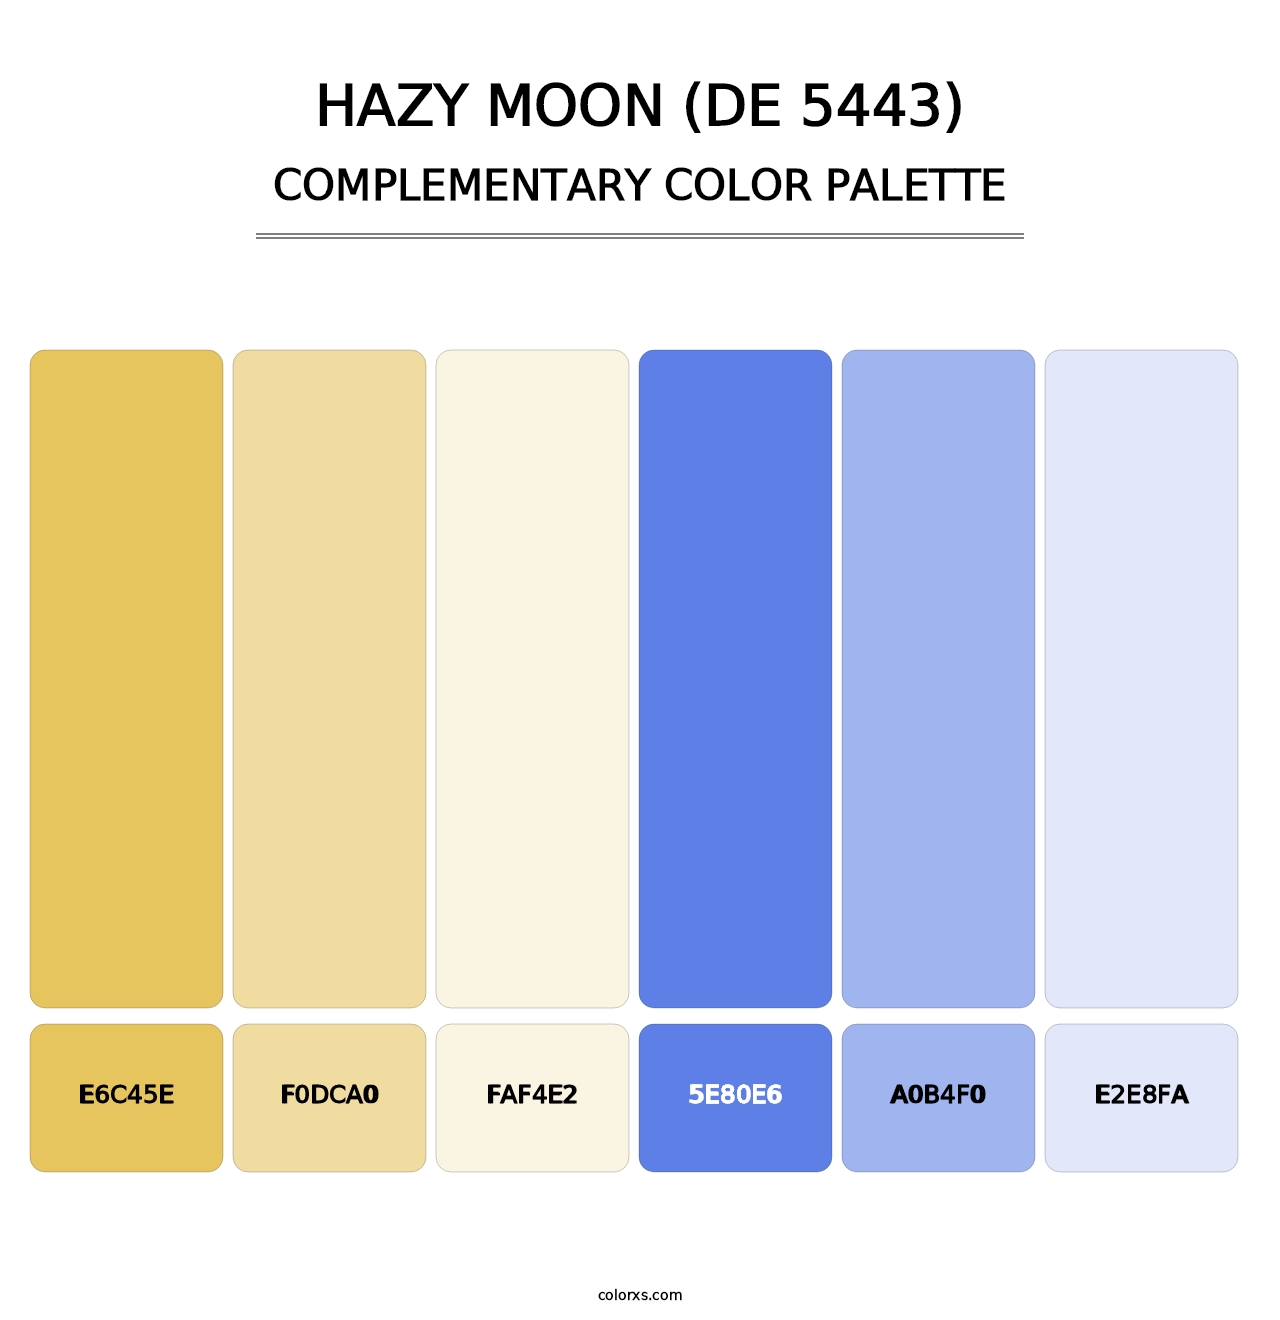 Hazy Moon (DE 5443) - Complementary Color Palette